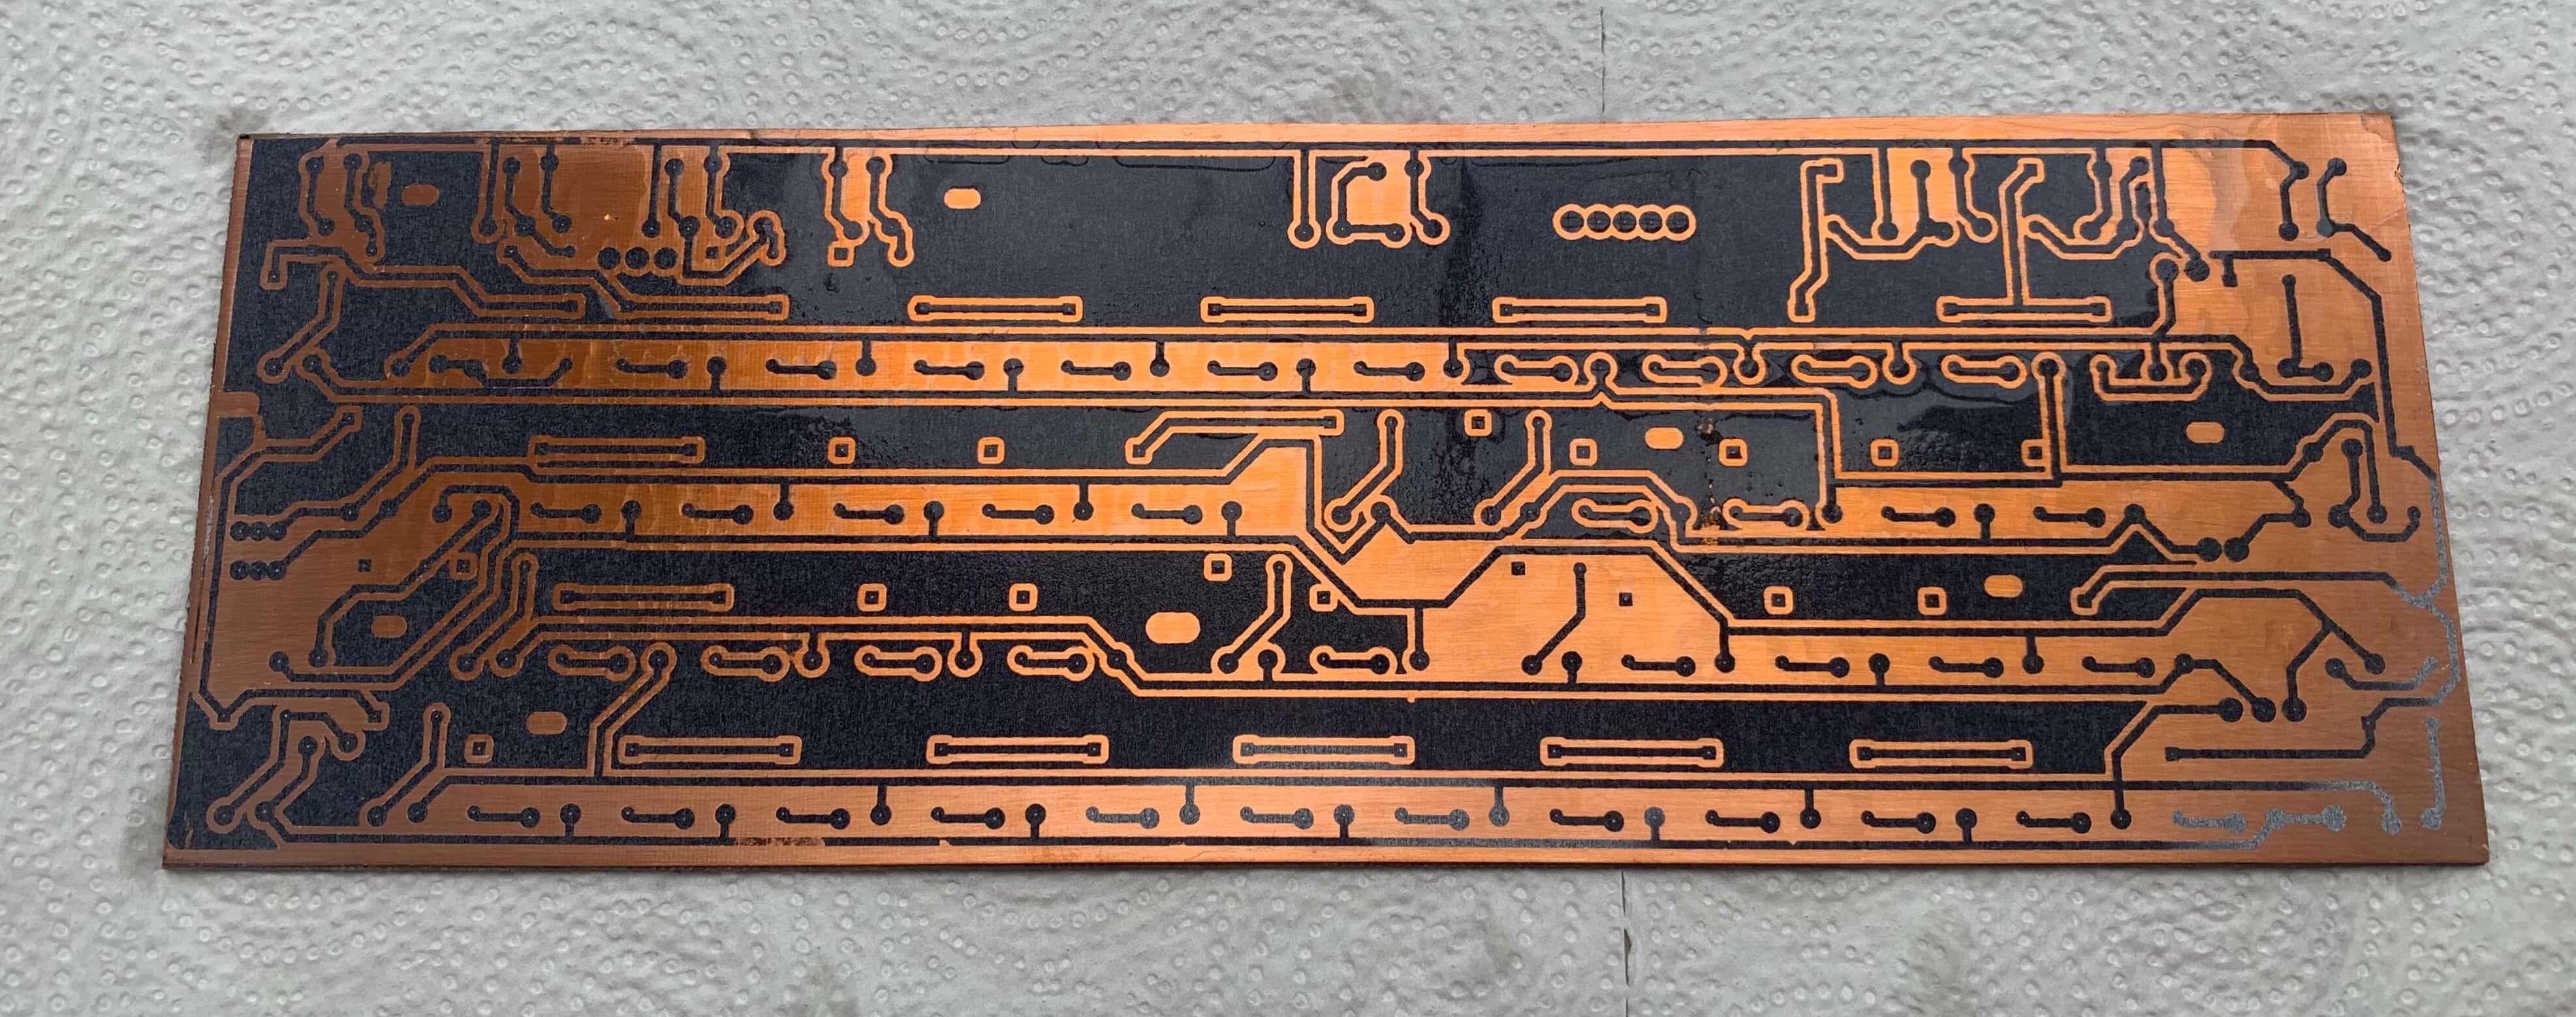 Copper board with transfered design